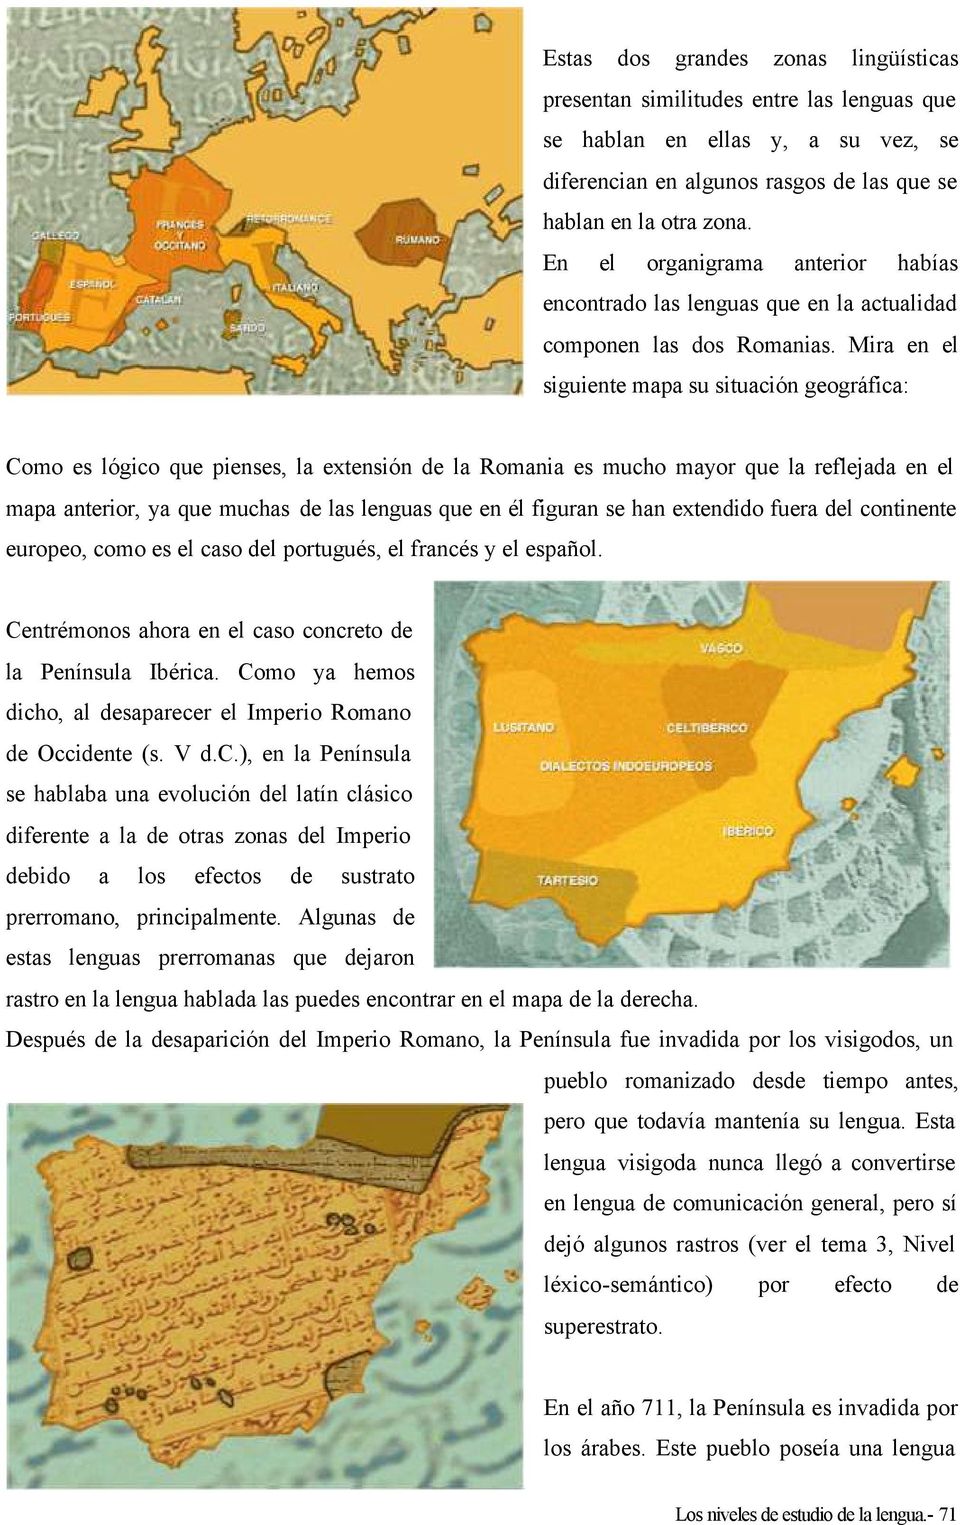 Mira en el siguiente mapa su situación geográfica: Como es lógico que pienses, la extensión de la Romania es mucho mayor que la reflejada en el mapa anterior, ya que muchas de las lenguas que en él